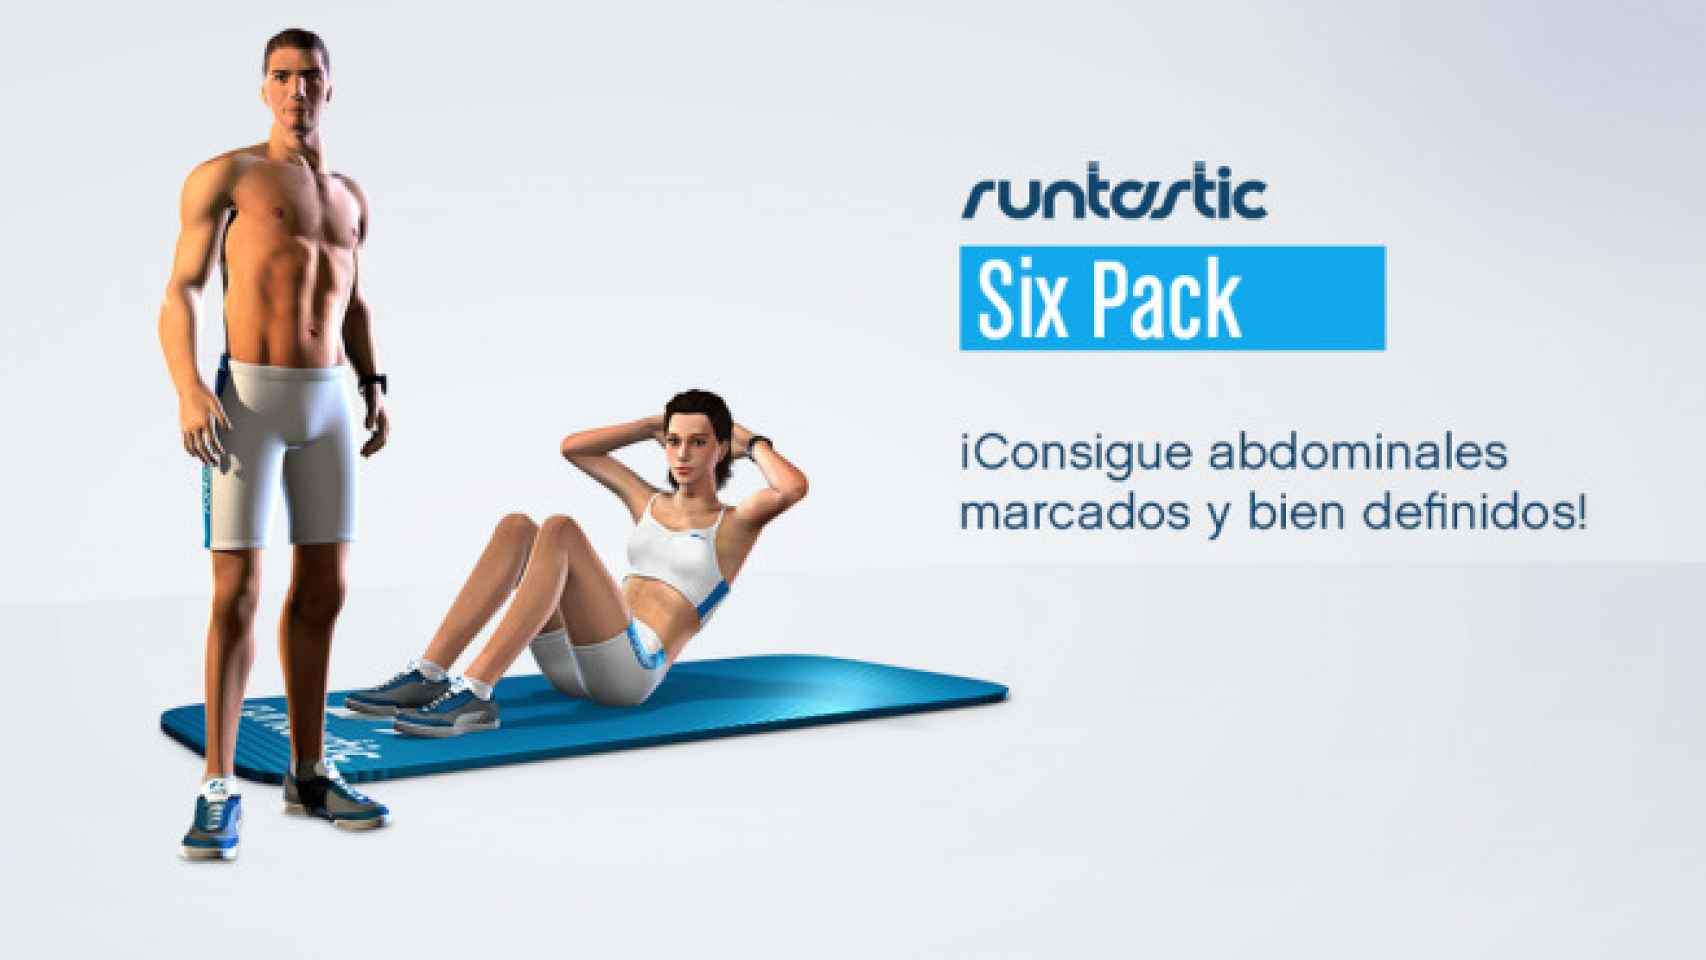 Runtastic Six Pack: El entrenador virtual para tus abdominales